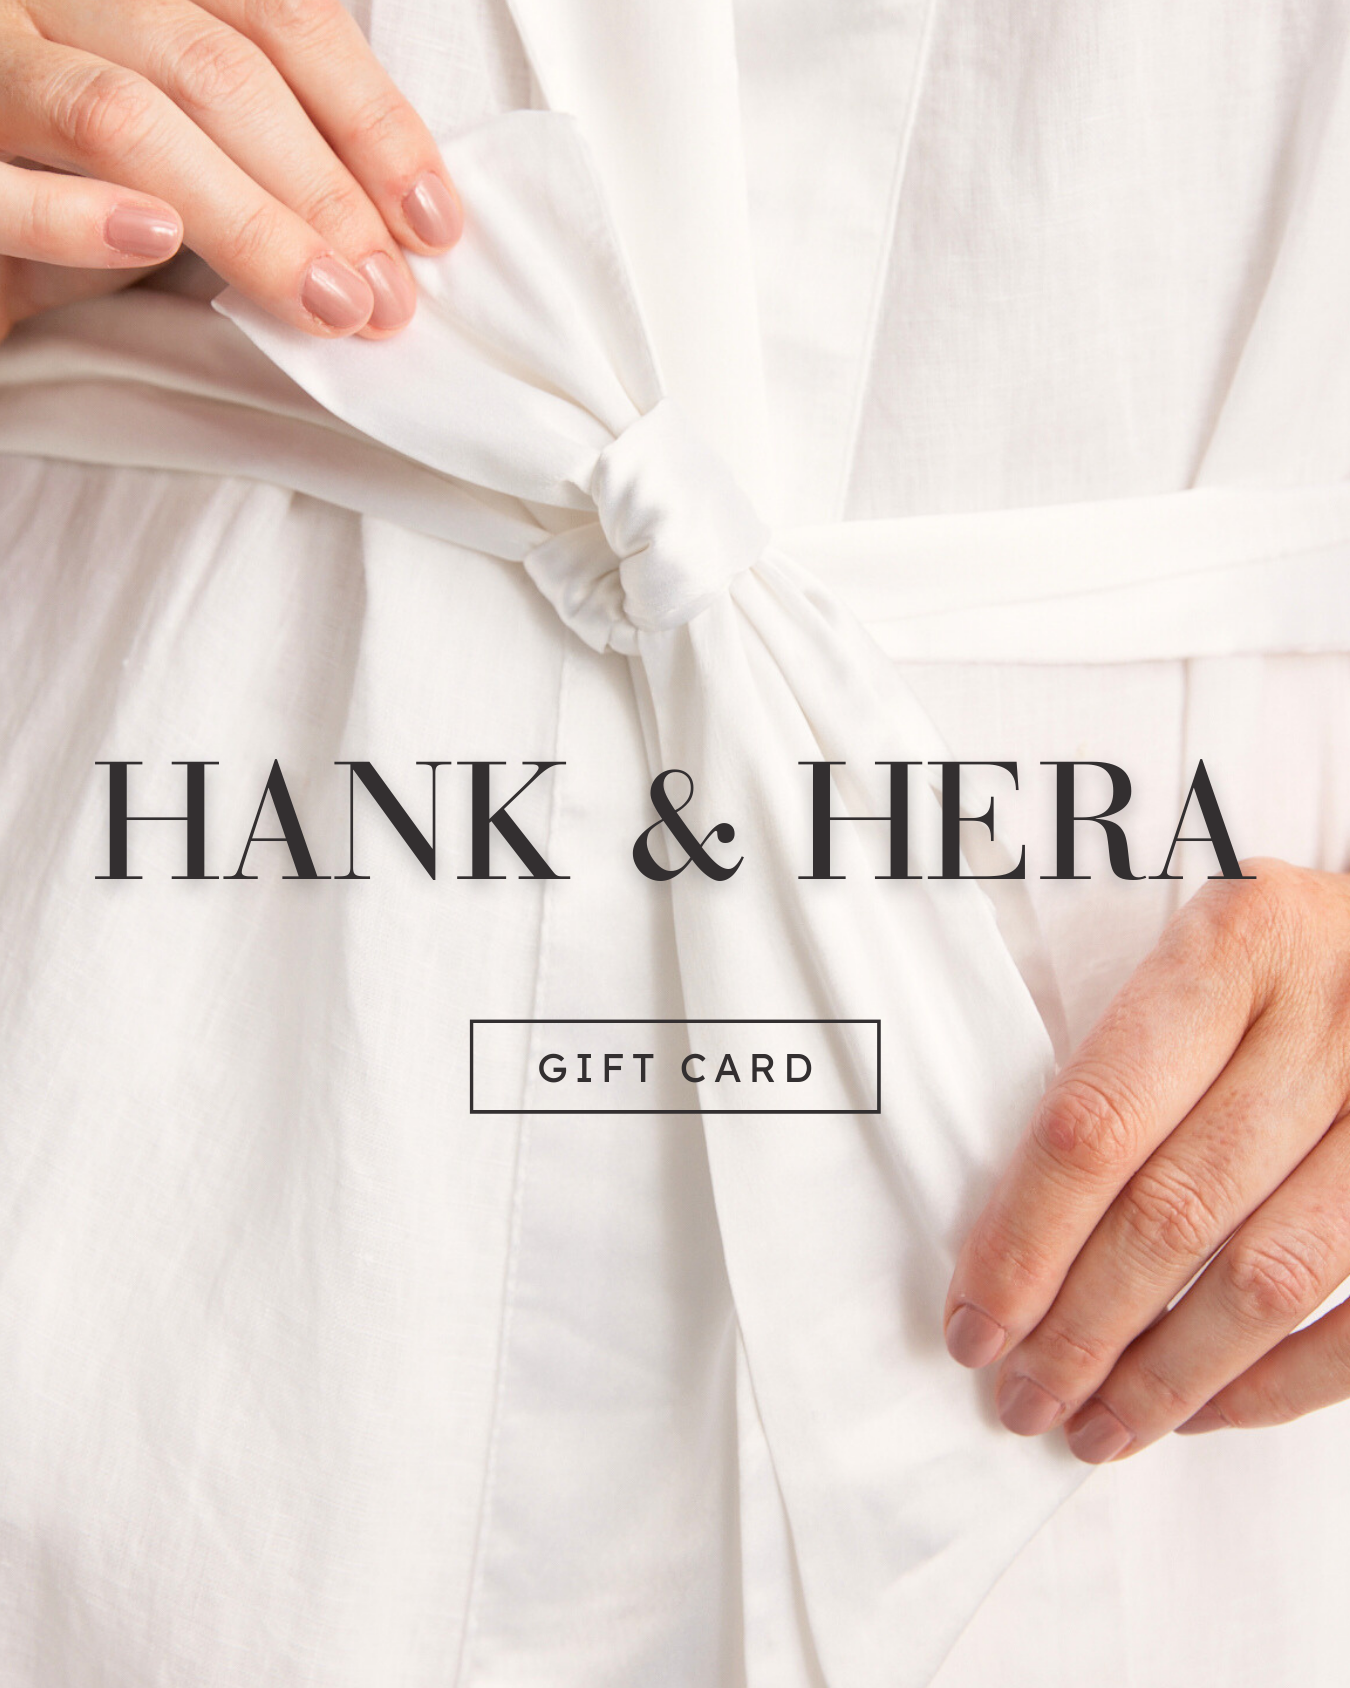 Hank & Hera e-Gift Card